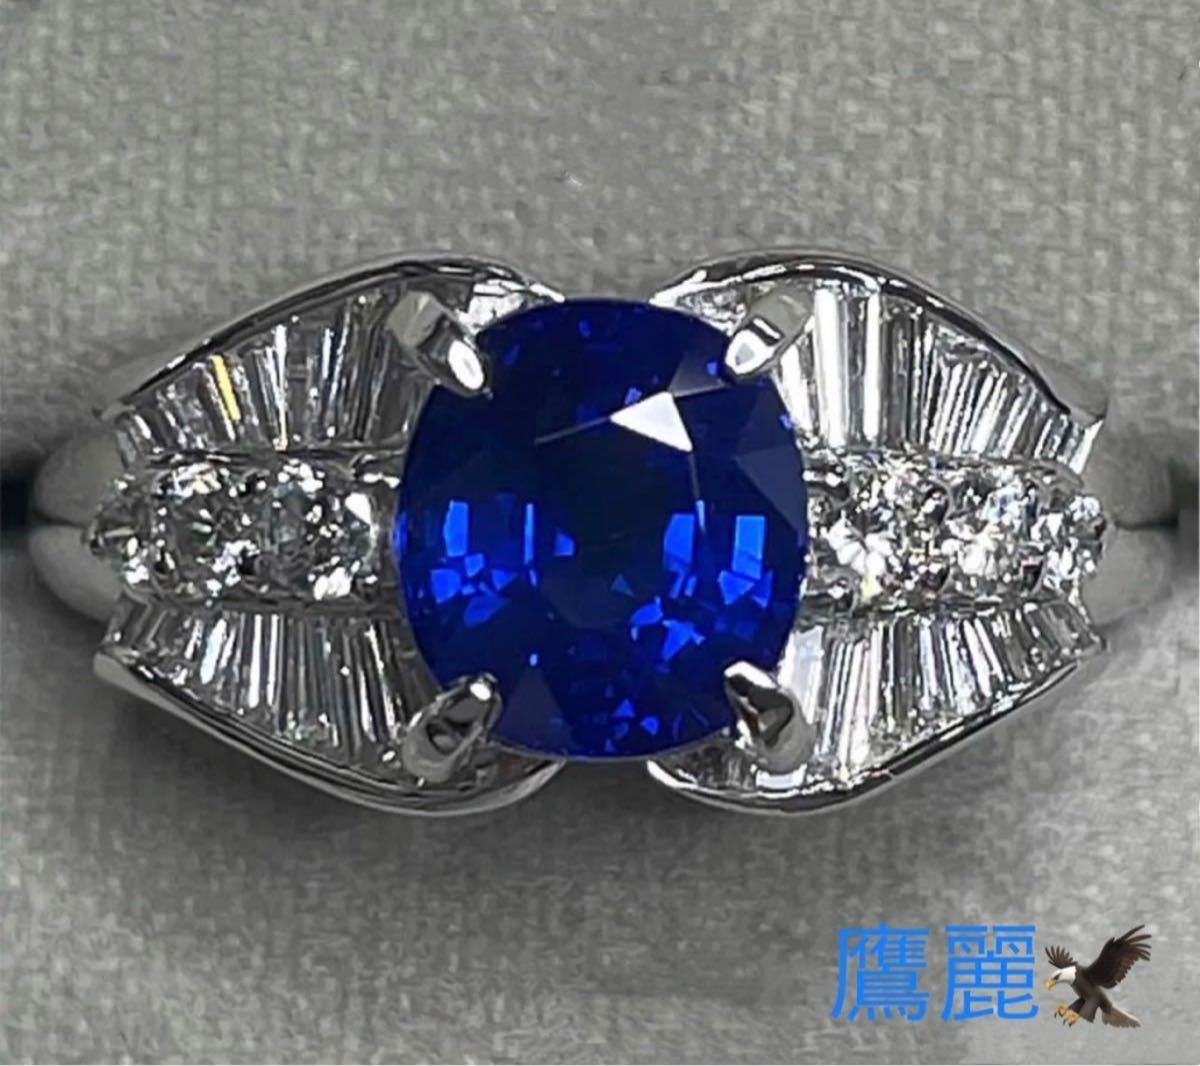 スリランカ産 非加熱ロイヤルブルーサファイア2.46ct 7.4g pt900指輪 ダイヤモンド0.55ctプラチナ 付 新品仕上げ済  期間限定特別価格 ダイヤモンド0.55ctプラチナ